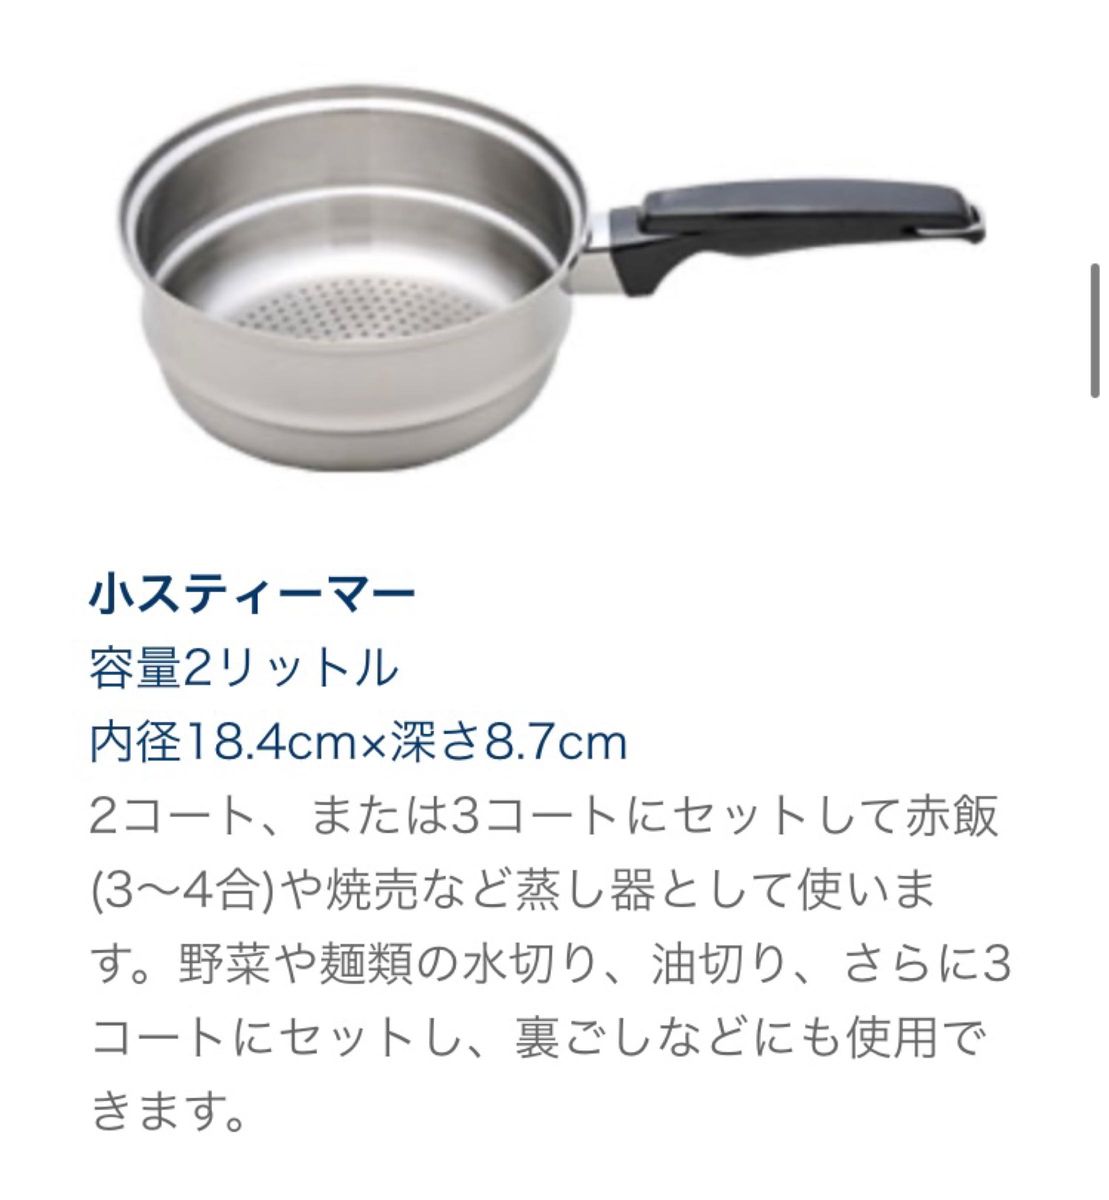 ロイヤルクイーン 鍋 IH対応 鍋セット 6コート 料理